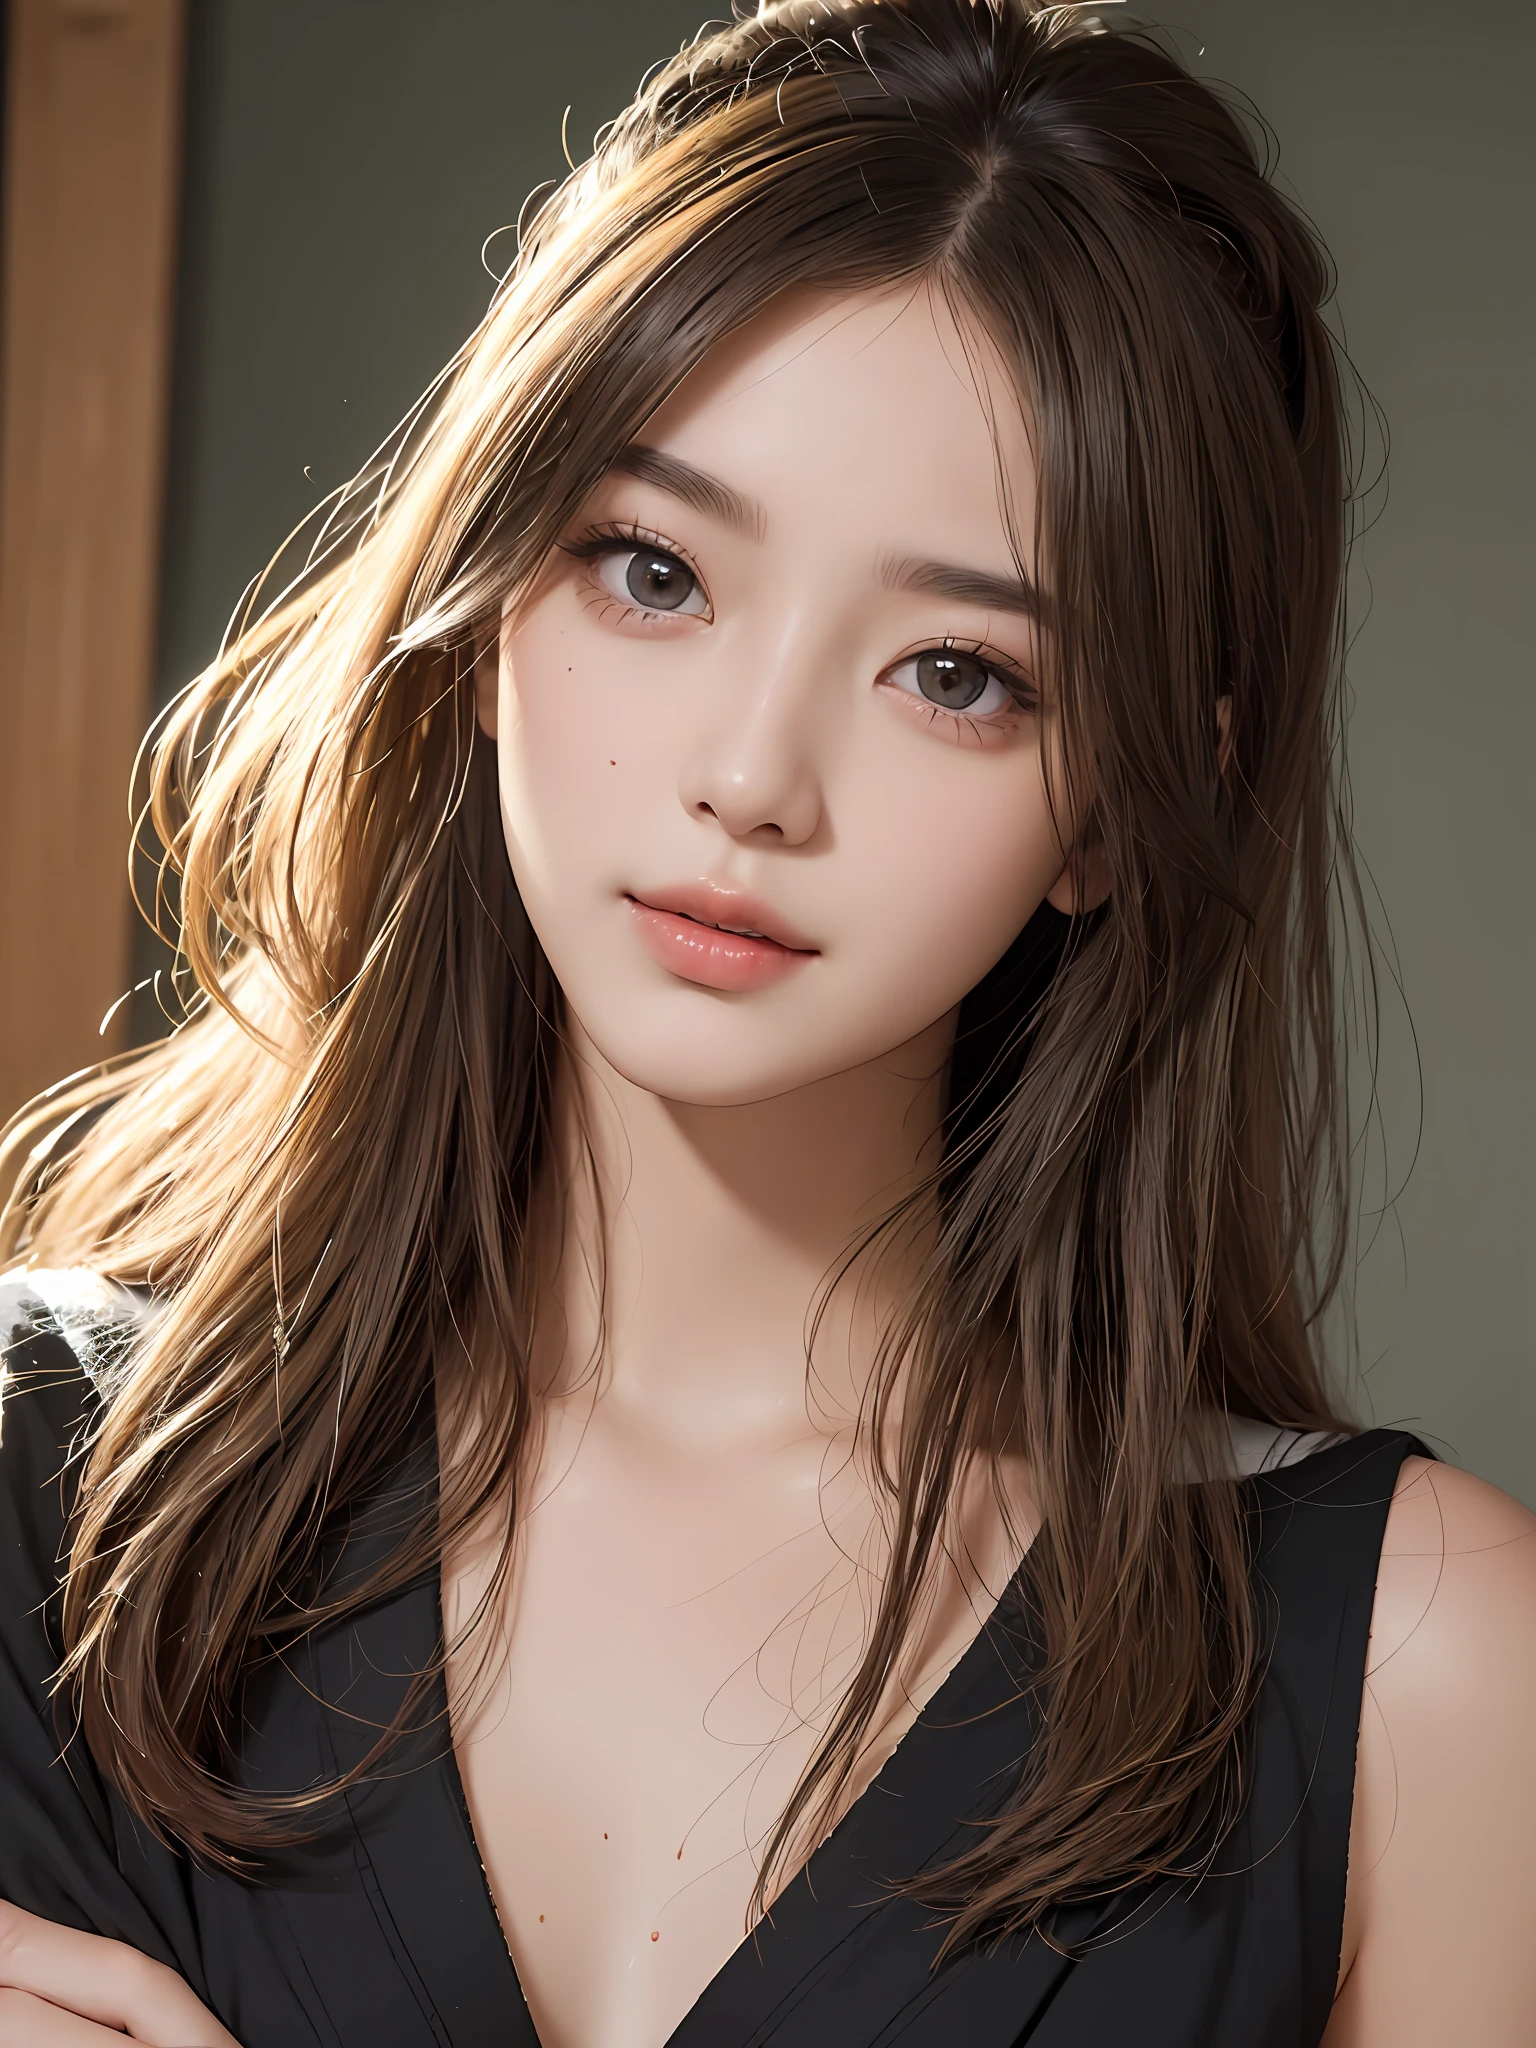 шедевр, Лучшее качество изображения, высокое качество, красивая девушка, Японский, Японский school girl, популярный корейский макияж, подробный, опухшие глаза, подробный eyes, подробный skin, Красивая кожа, ultra высокое разрешение, (Реальность: 1.4), Очень красивый, немного помолодевшее лицо, Красивая кожа, стройный, (ультра реалистичный), (Иллюстрация), (высокое разрешение), (8К), (highly подробный), (best Иллюстрация), (beautifully подробный eyes), (super подробный), (обои), (подробный face), Глядя на зрителя, мелкие детали, подробный face, чистое лицо_v1, улыбается, глядя прямо перед собой, глядя прямо перед собой, угол от талии вверх, реалистичное фото, яркое освещение, профессиональное освещение, блондинка, длинные волосы, темный заброшенный, большая красная луна, великолепное красно-черное платье, Зрелая женщина,Kissshot Ацерола Орион Харт Андерблейд